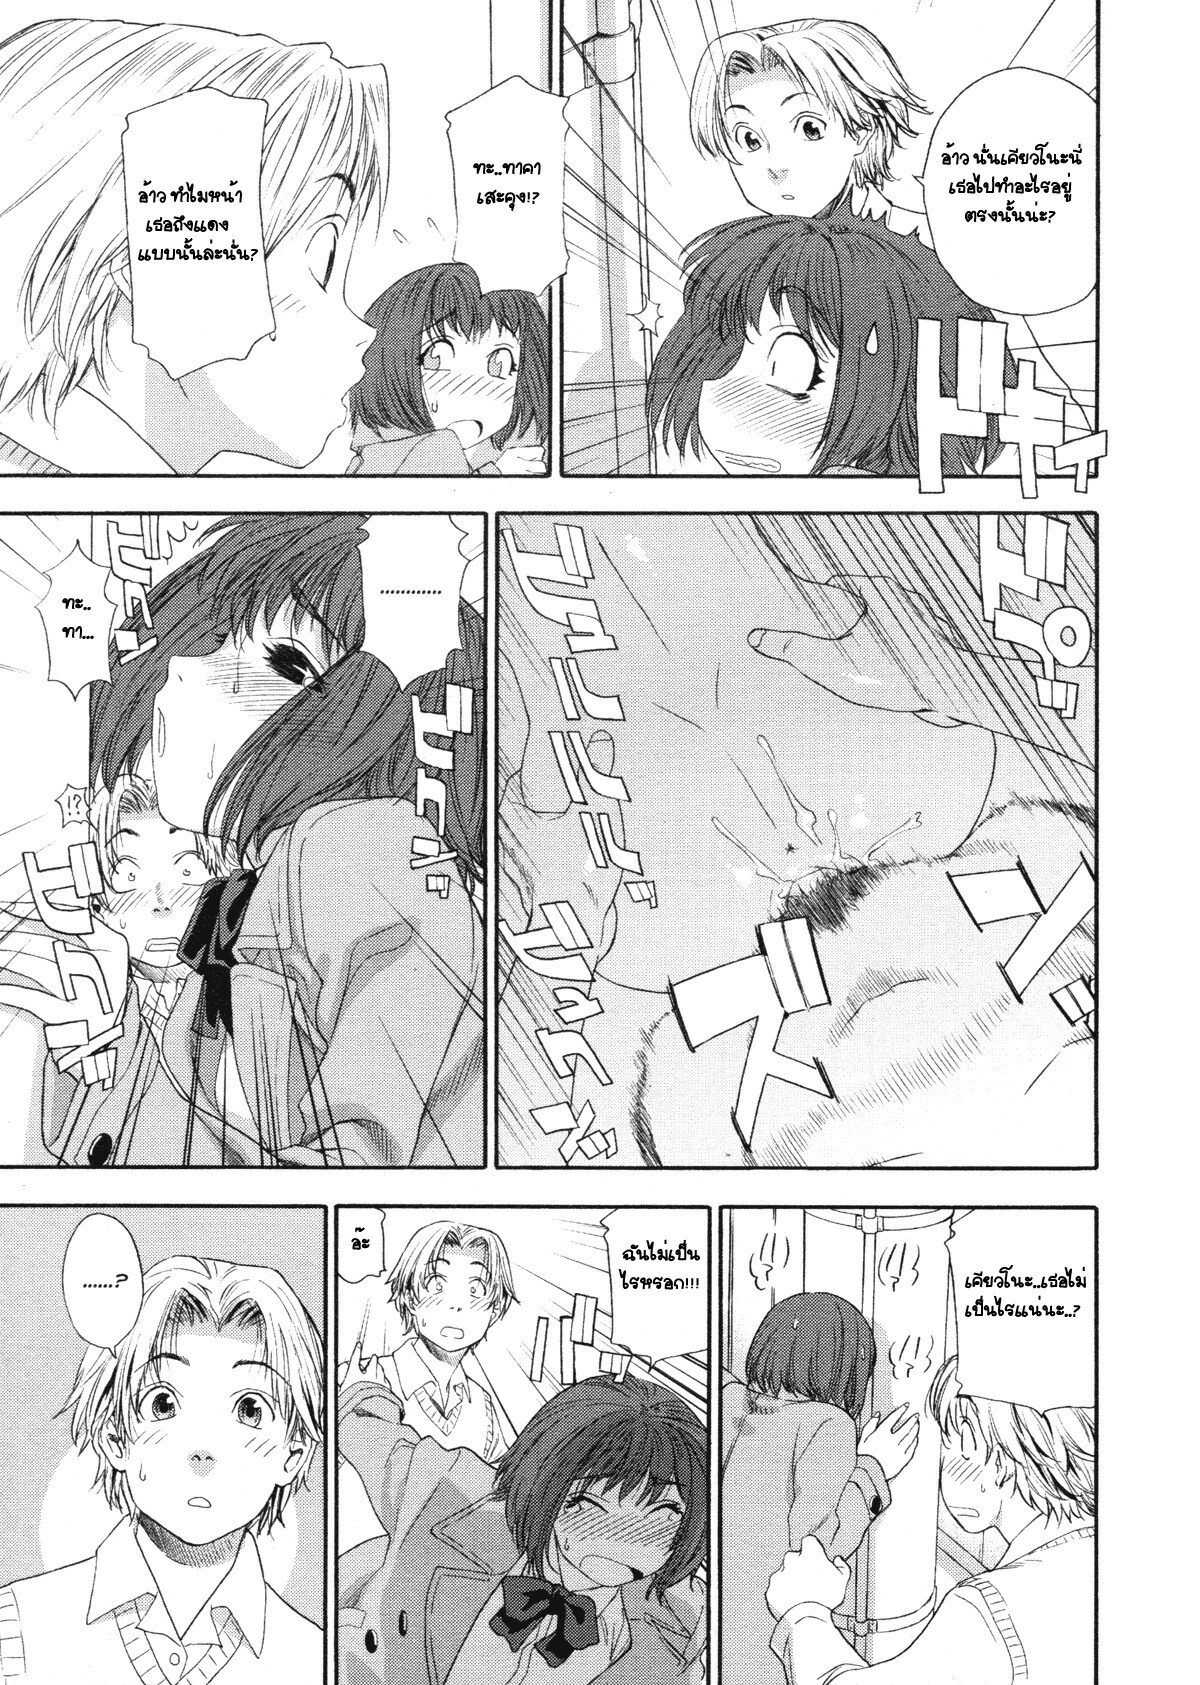 [Yamatogawa] TELEPA SWEET =Aqua Bless chapter1= [Thai] page 6 full